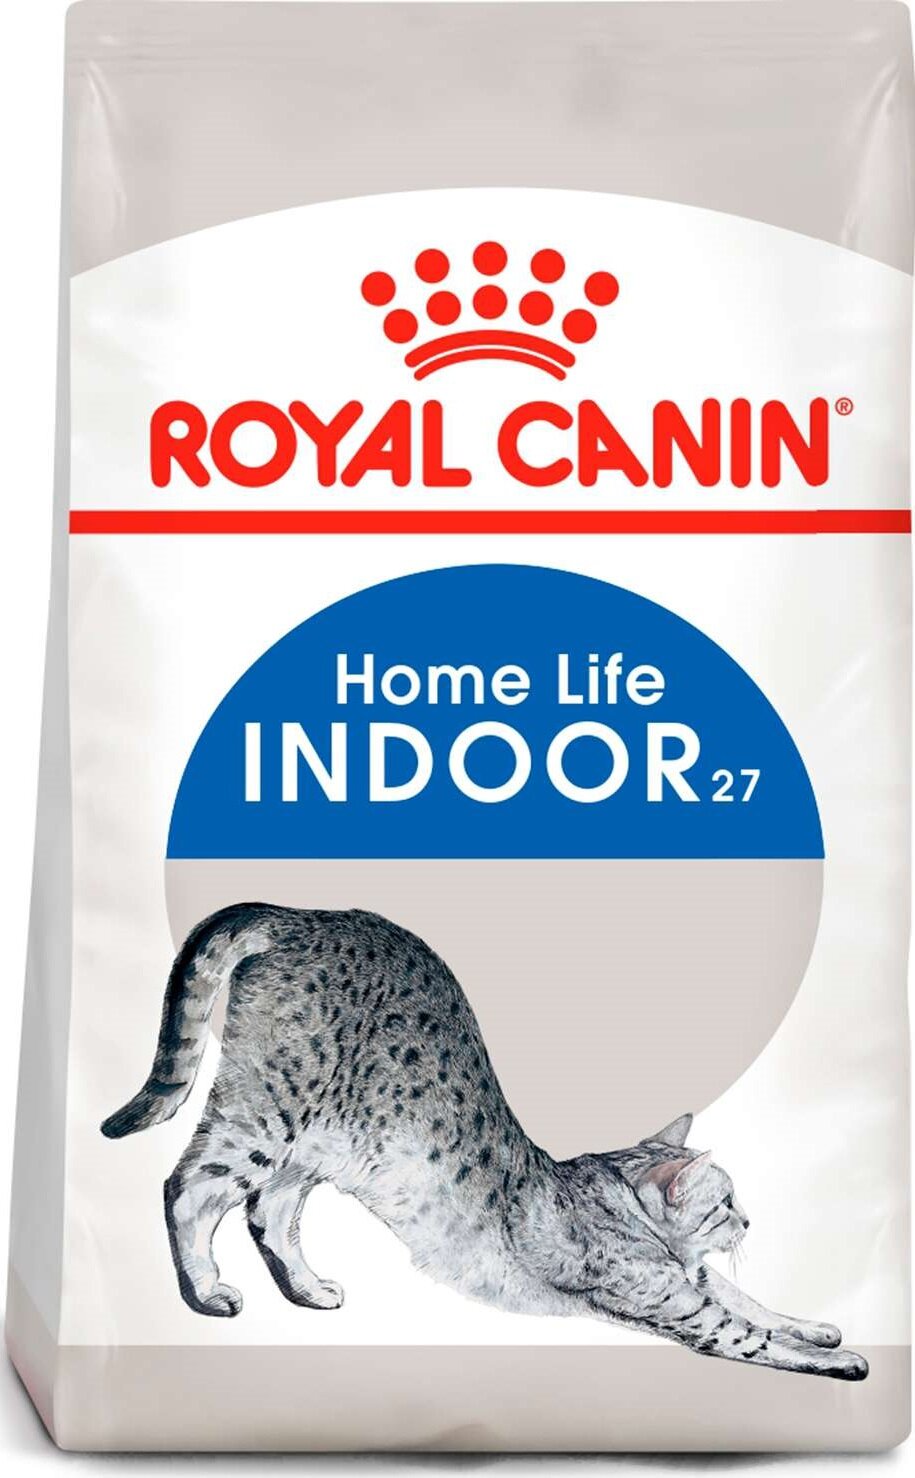 Сухой корм Royal Canin Indoor 27 сбалансированный для взрослых кошек живущих в помещении 400г